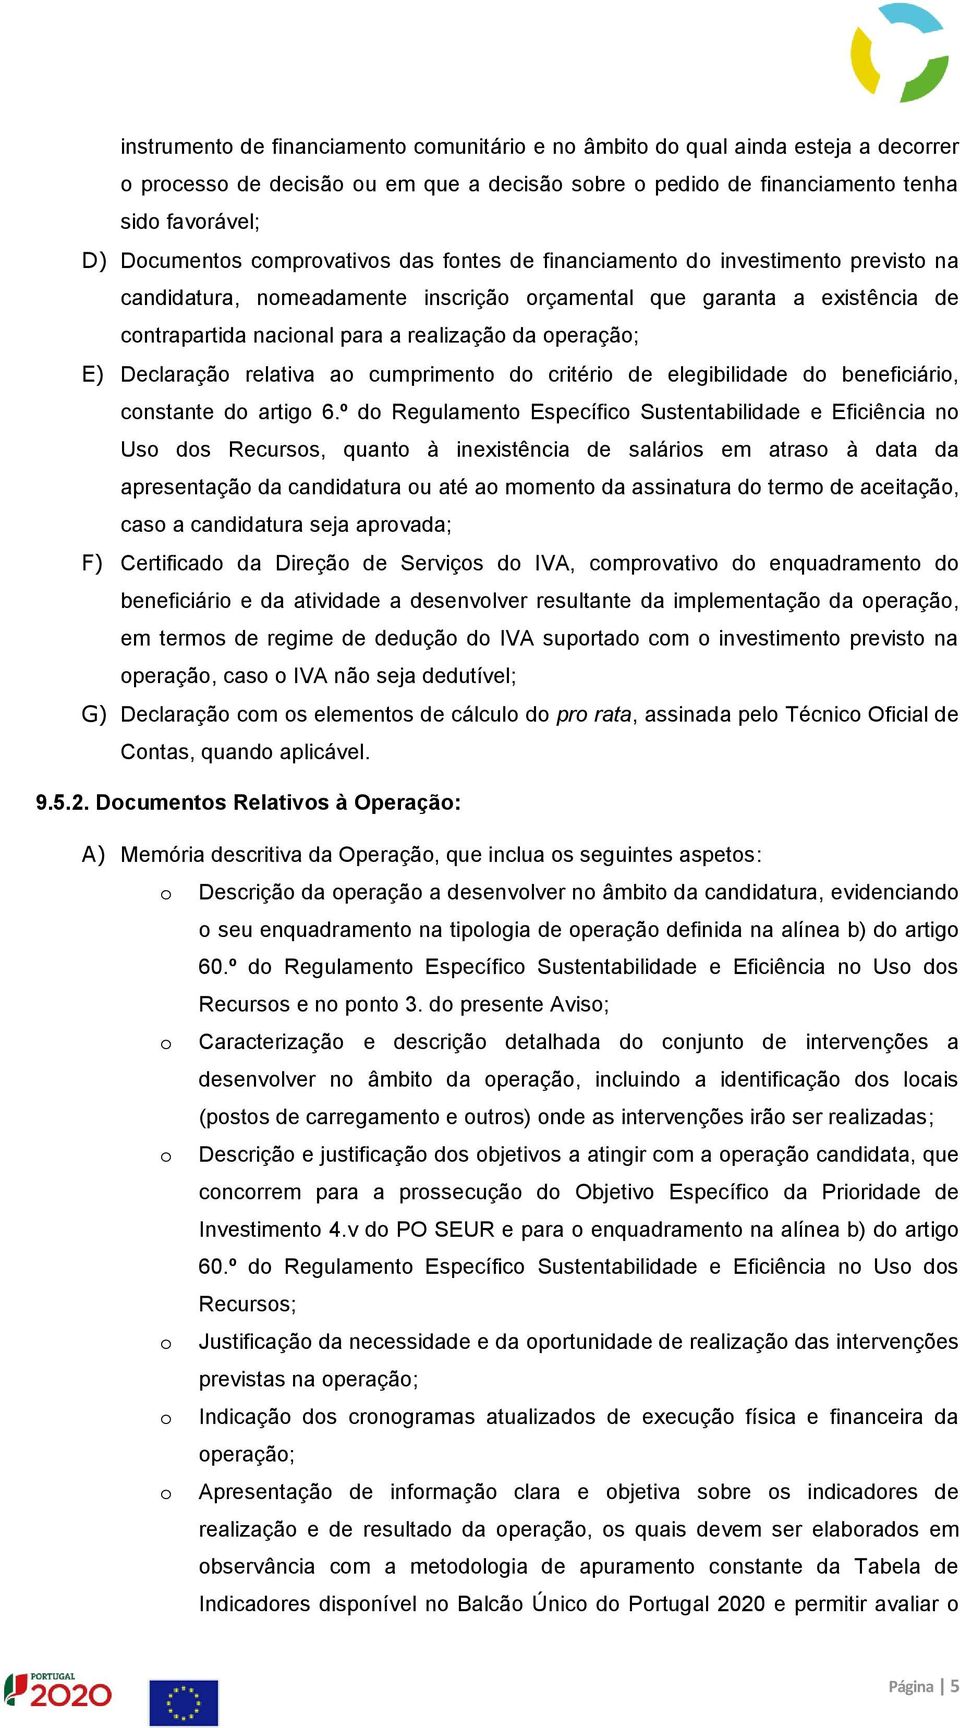 E) Declaração relativa ao cumprimento do critério de elegibilidade do beneficiário, constante do artigo 6.